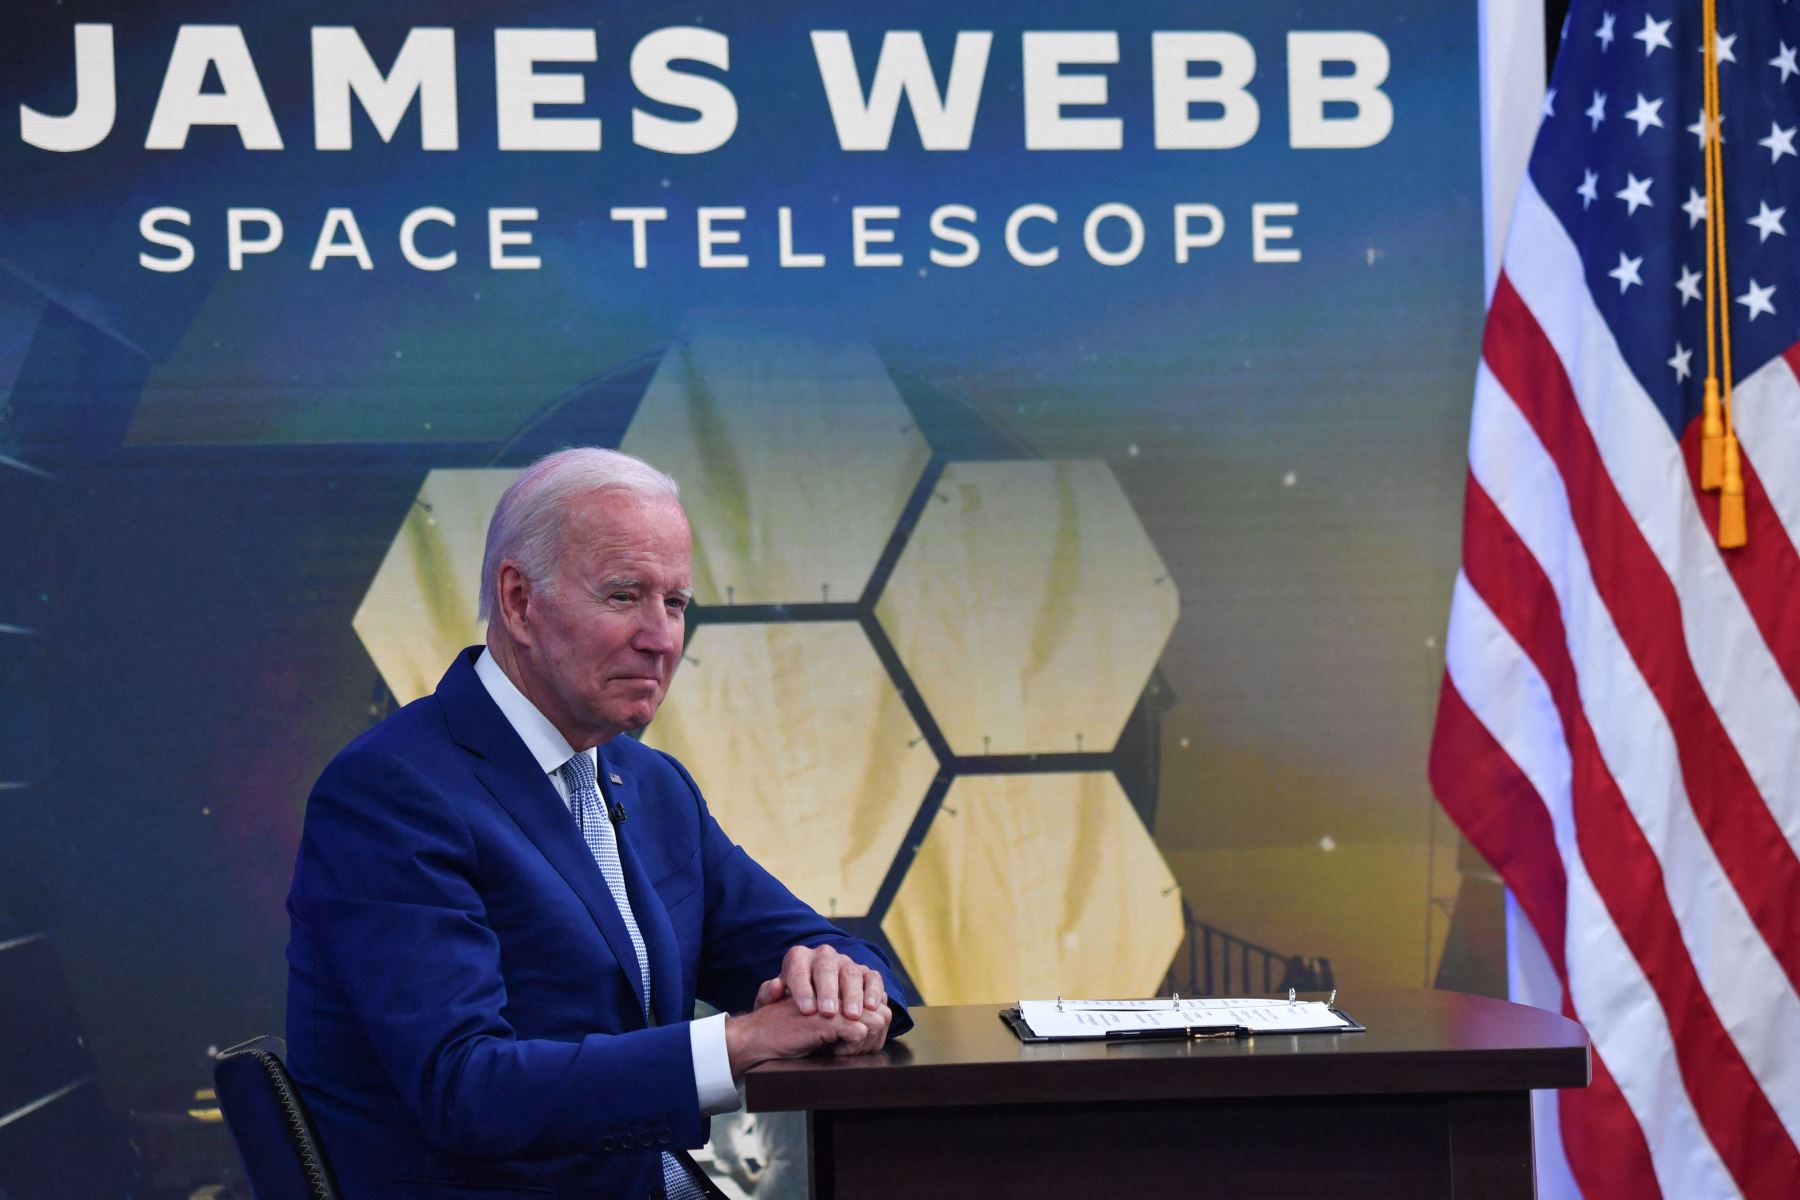 El presidente de EE. UU., Joe Biden, asiste a una sesión informativa en la que presentará una vista previa de las primeras imágenes infrarrojas del telescopio espacial James Webb (JWST) durante una sesión informativa de funcionarios de la Administración Nacional de Aeronáutica y del Espacio (NASA).
Foto: AFP